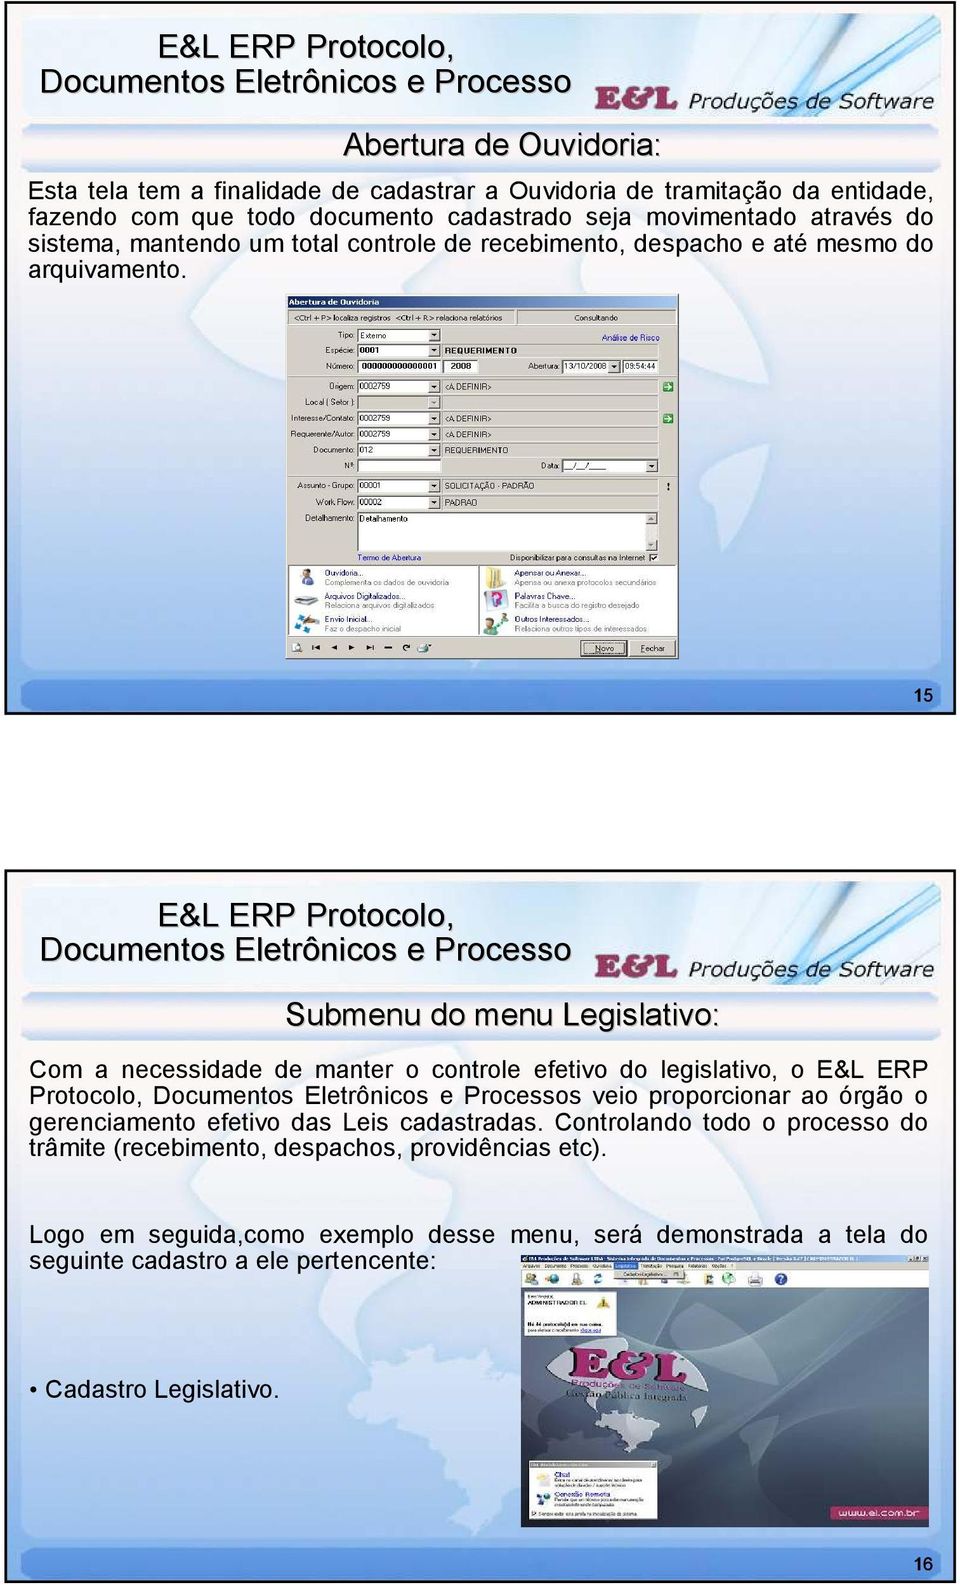 15 Submenu do menu Legislativo: Com a necessidade de manter o controle efetivo do legislativo, o E&L ERP Protocolo, s veio proporcionar ao órgão o gerenciamento